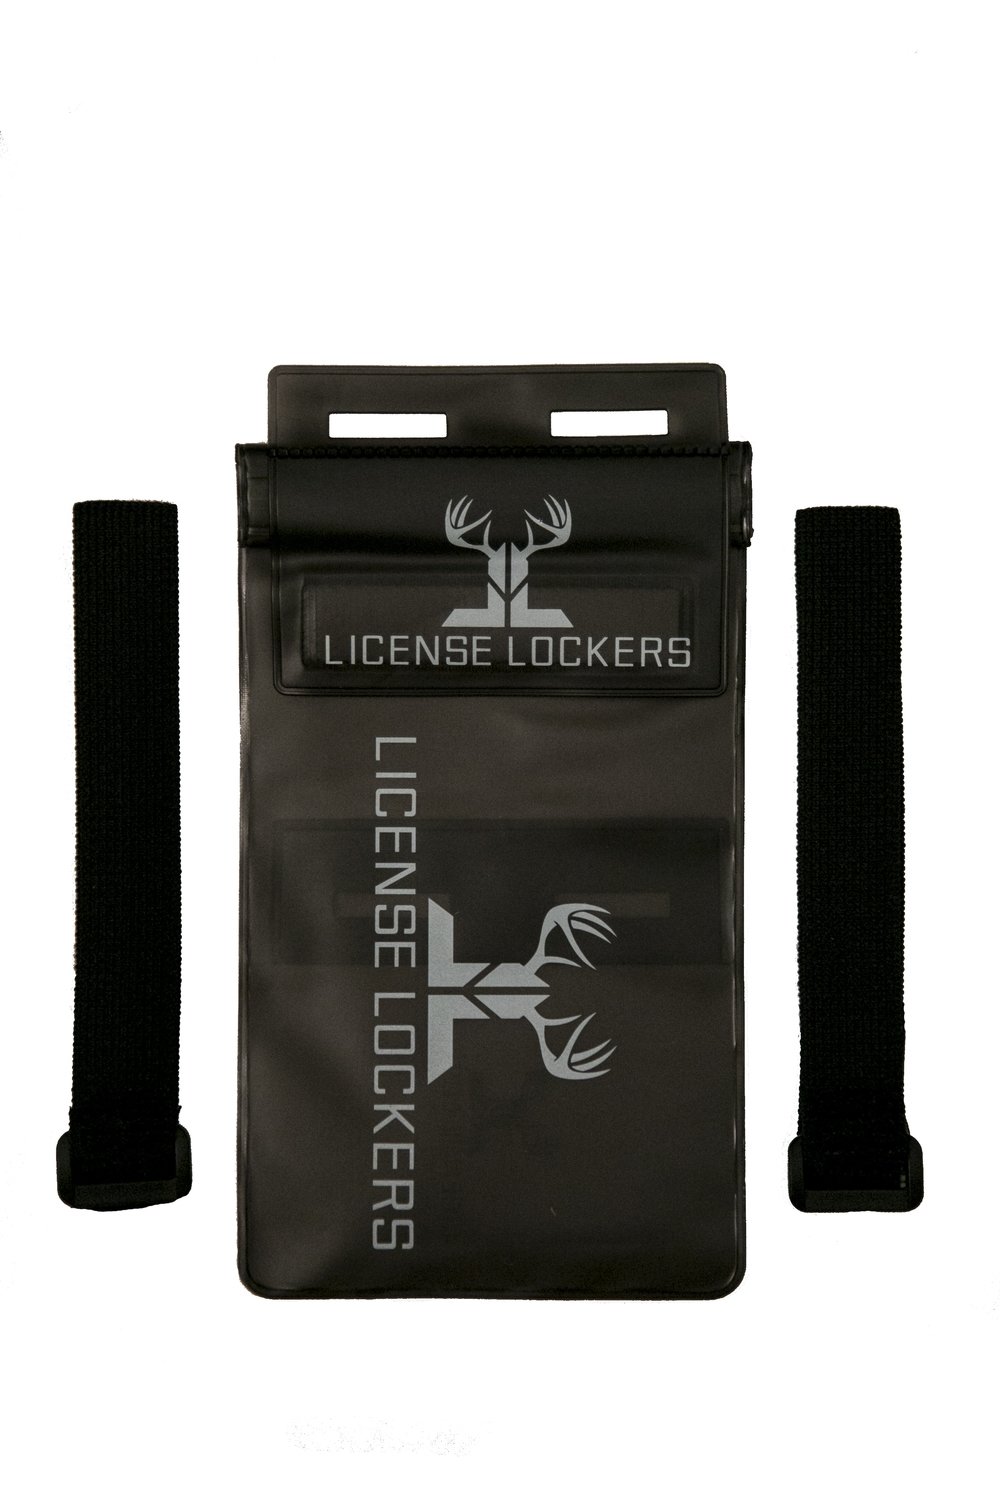 License Lockers - 1 pack